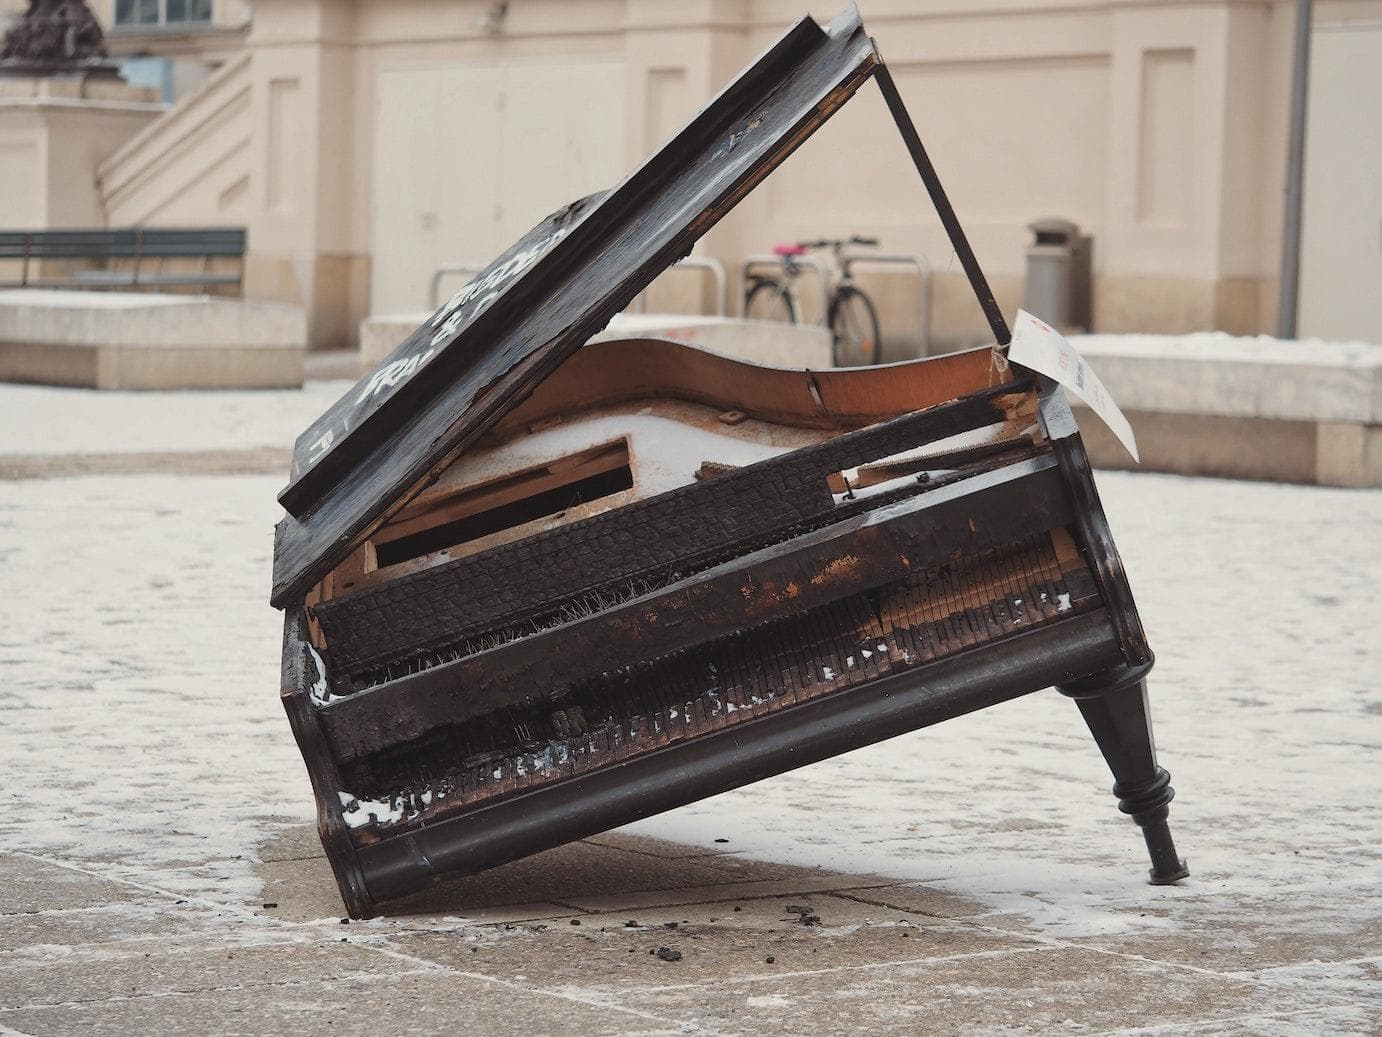 acheter un piano d'occasion / achat piano / quel piano / offre piano 300 euros / Yamaha / Roland / korg / casio / Colmann / comencer le piano